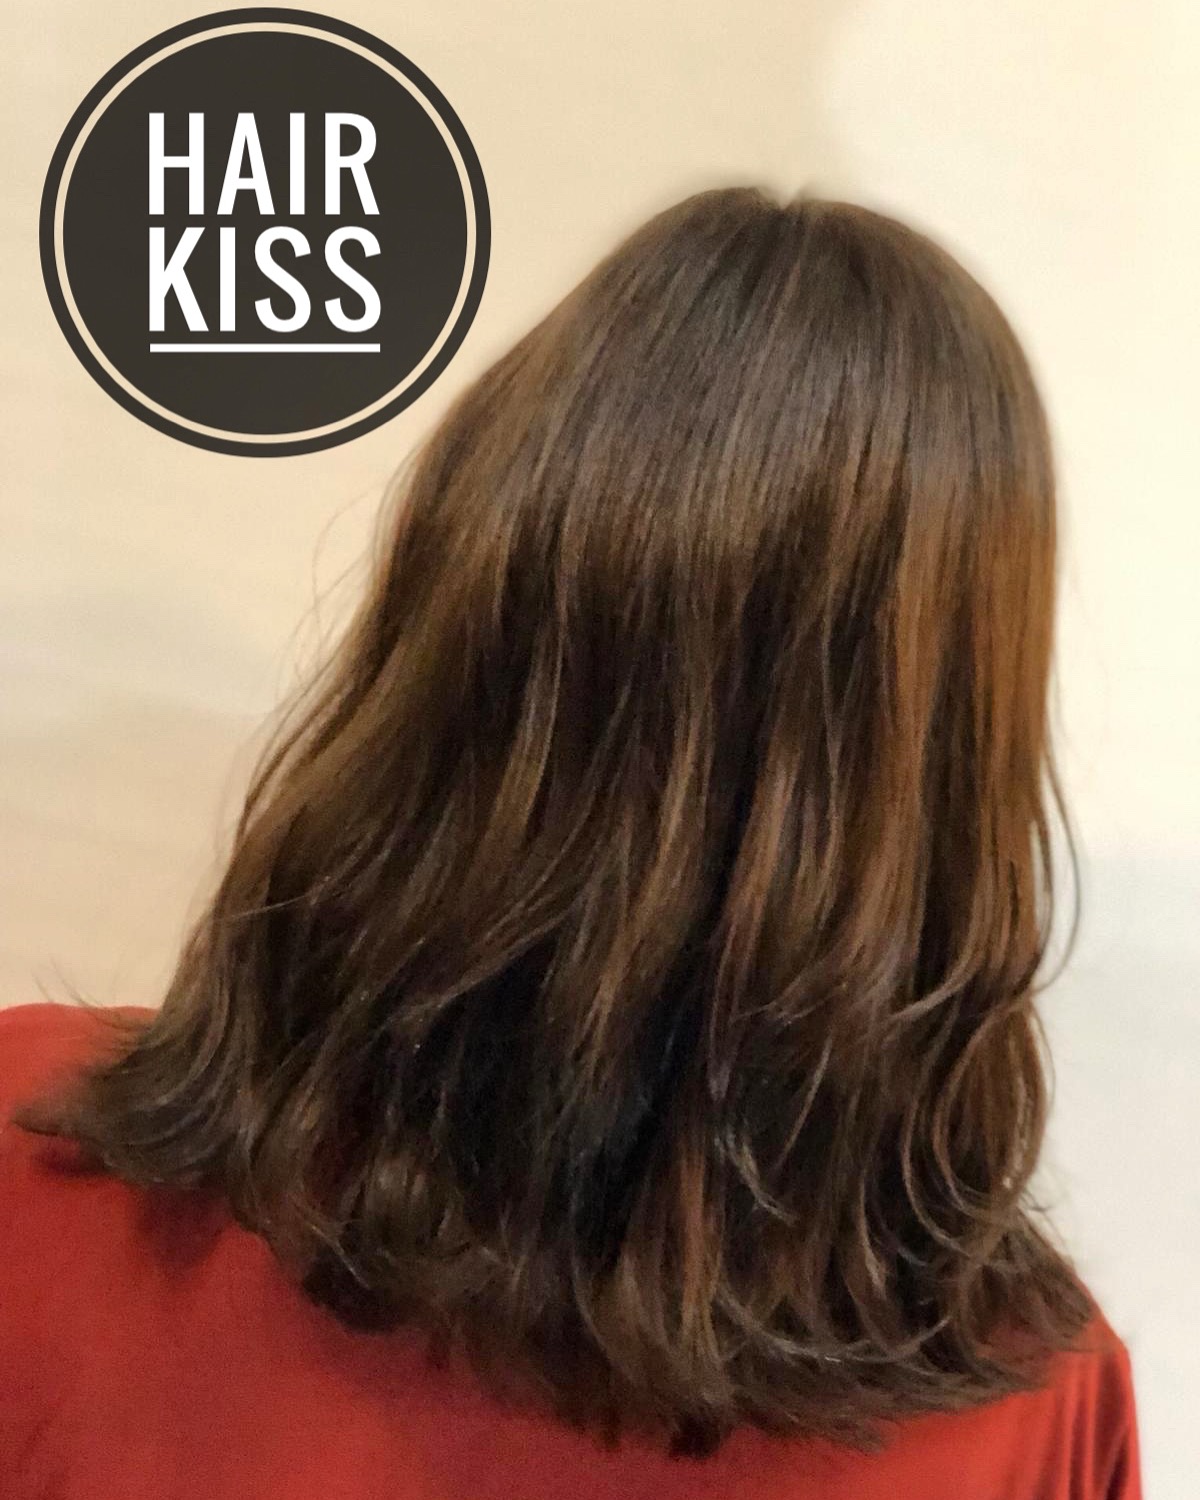 作品參考 / 最新消息:Hair kiss